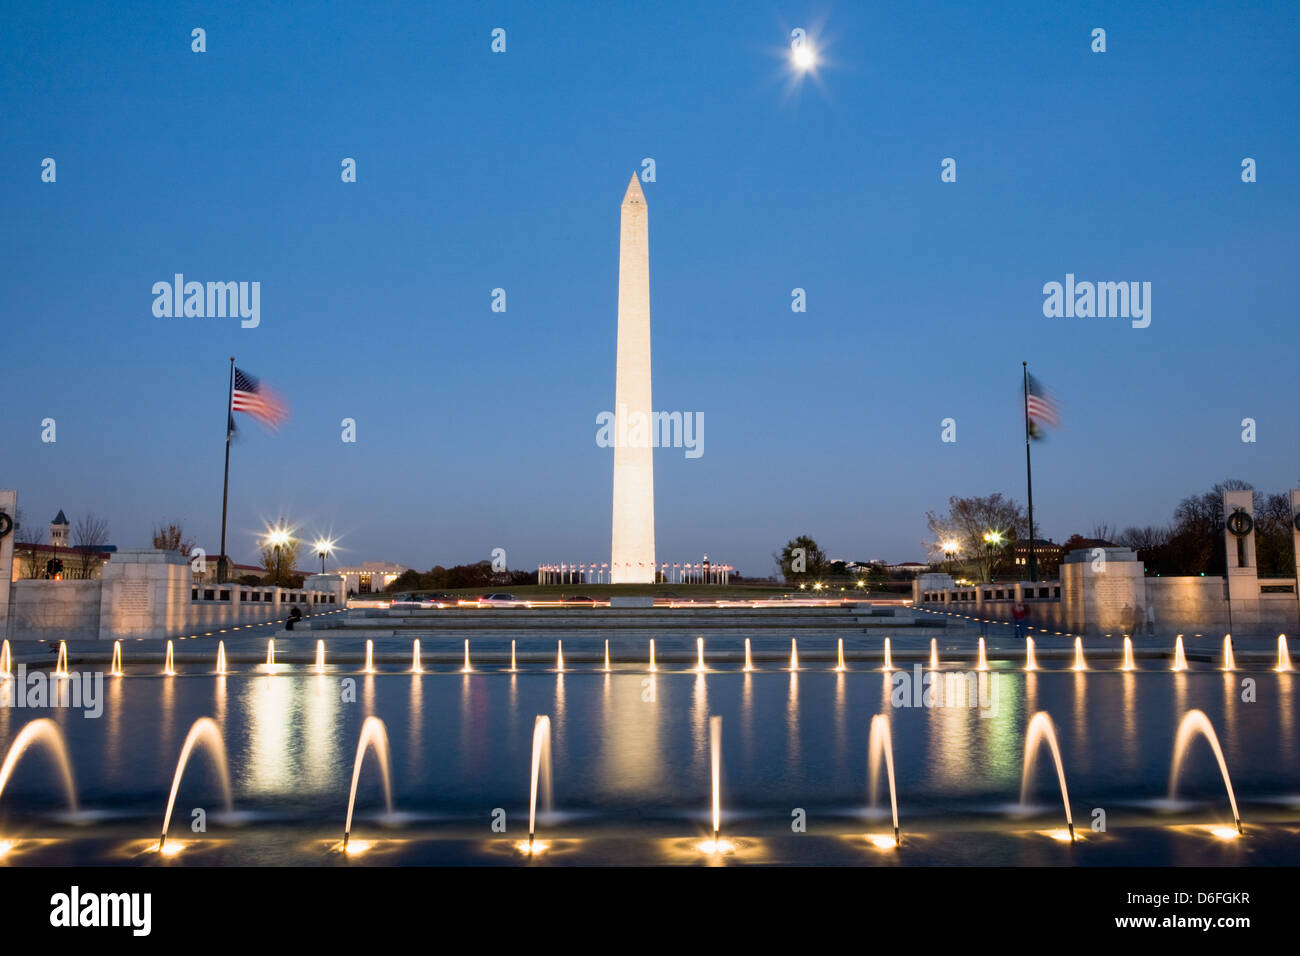 Washington Monument, Washington, D.C. Stock Photo